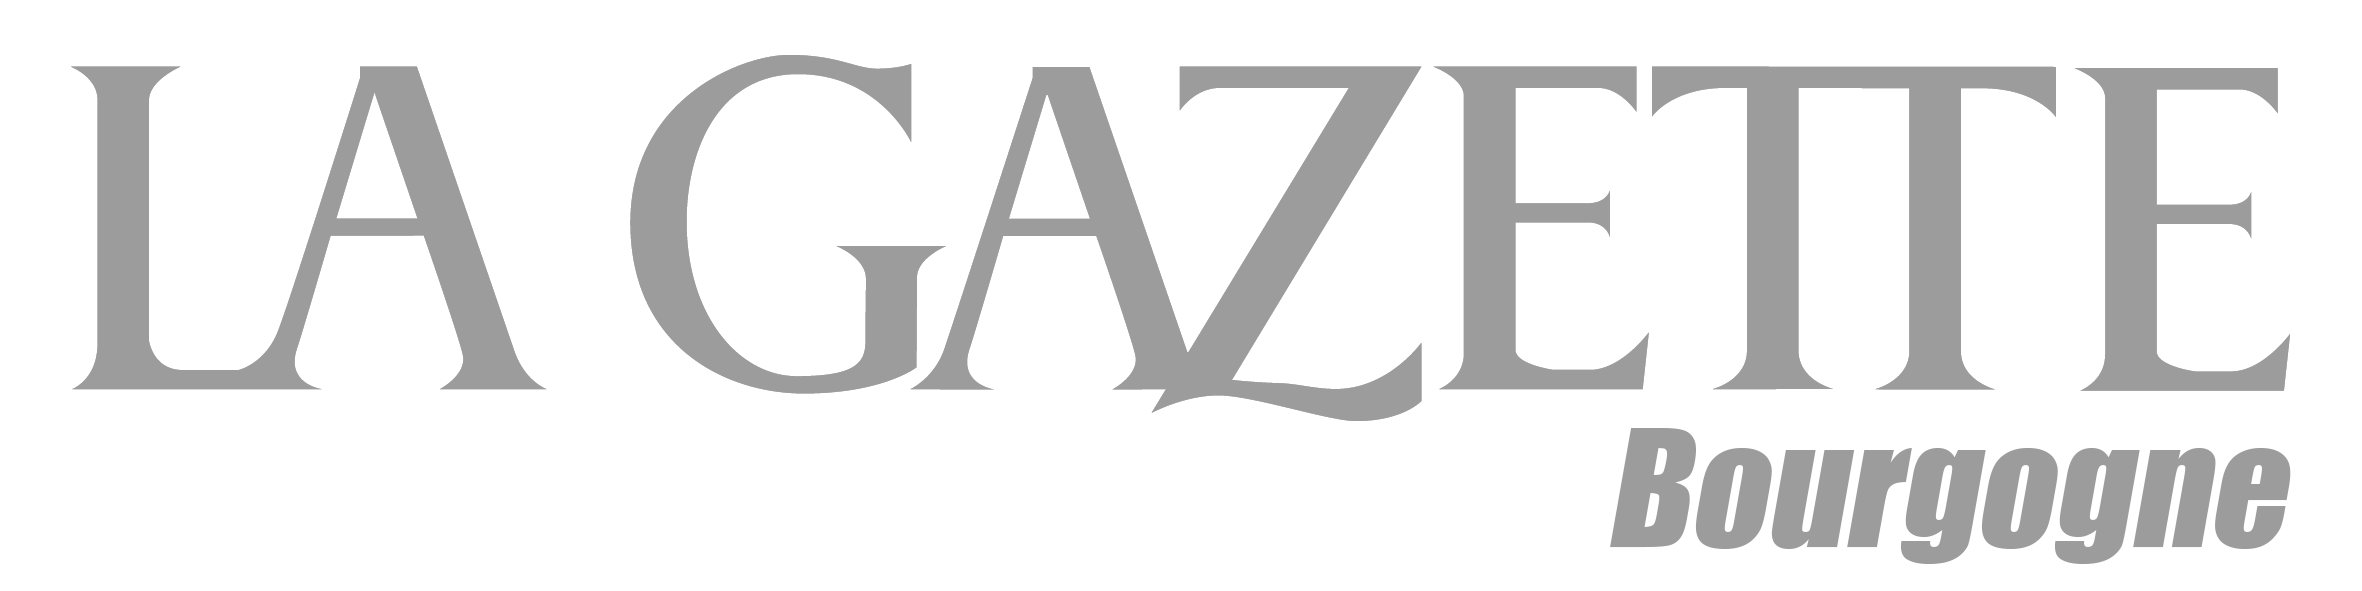 La Gazette France